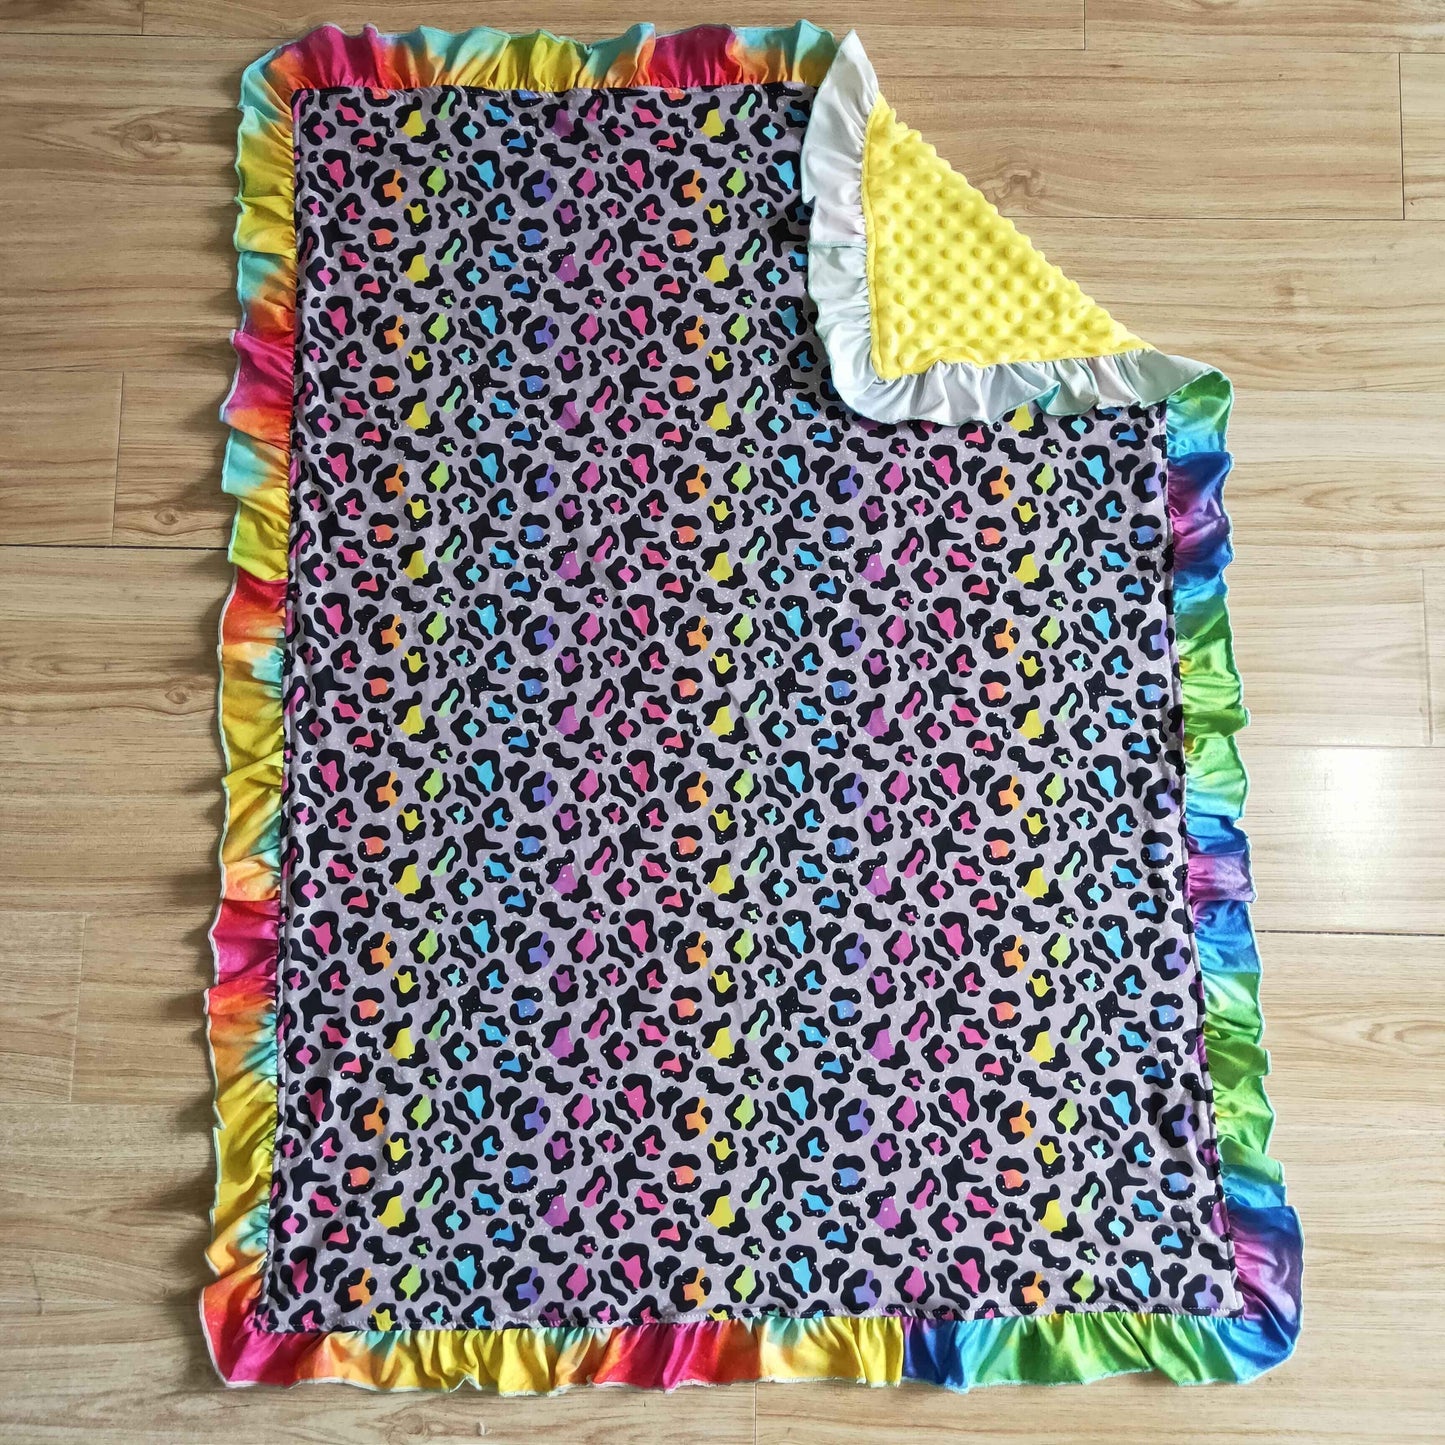 Neon Leopard Blanket